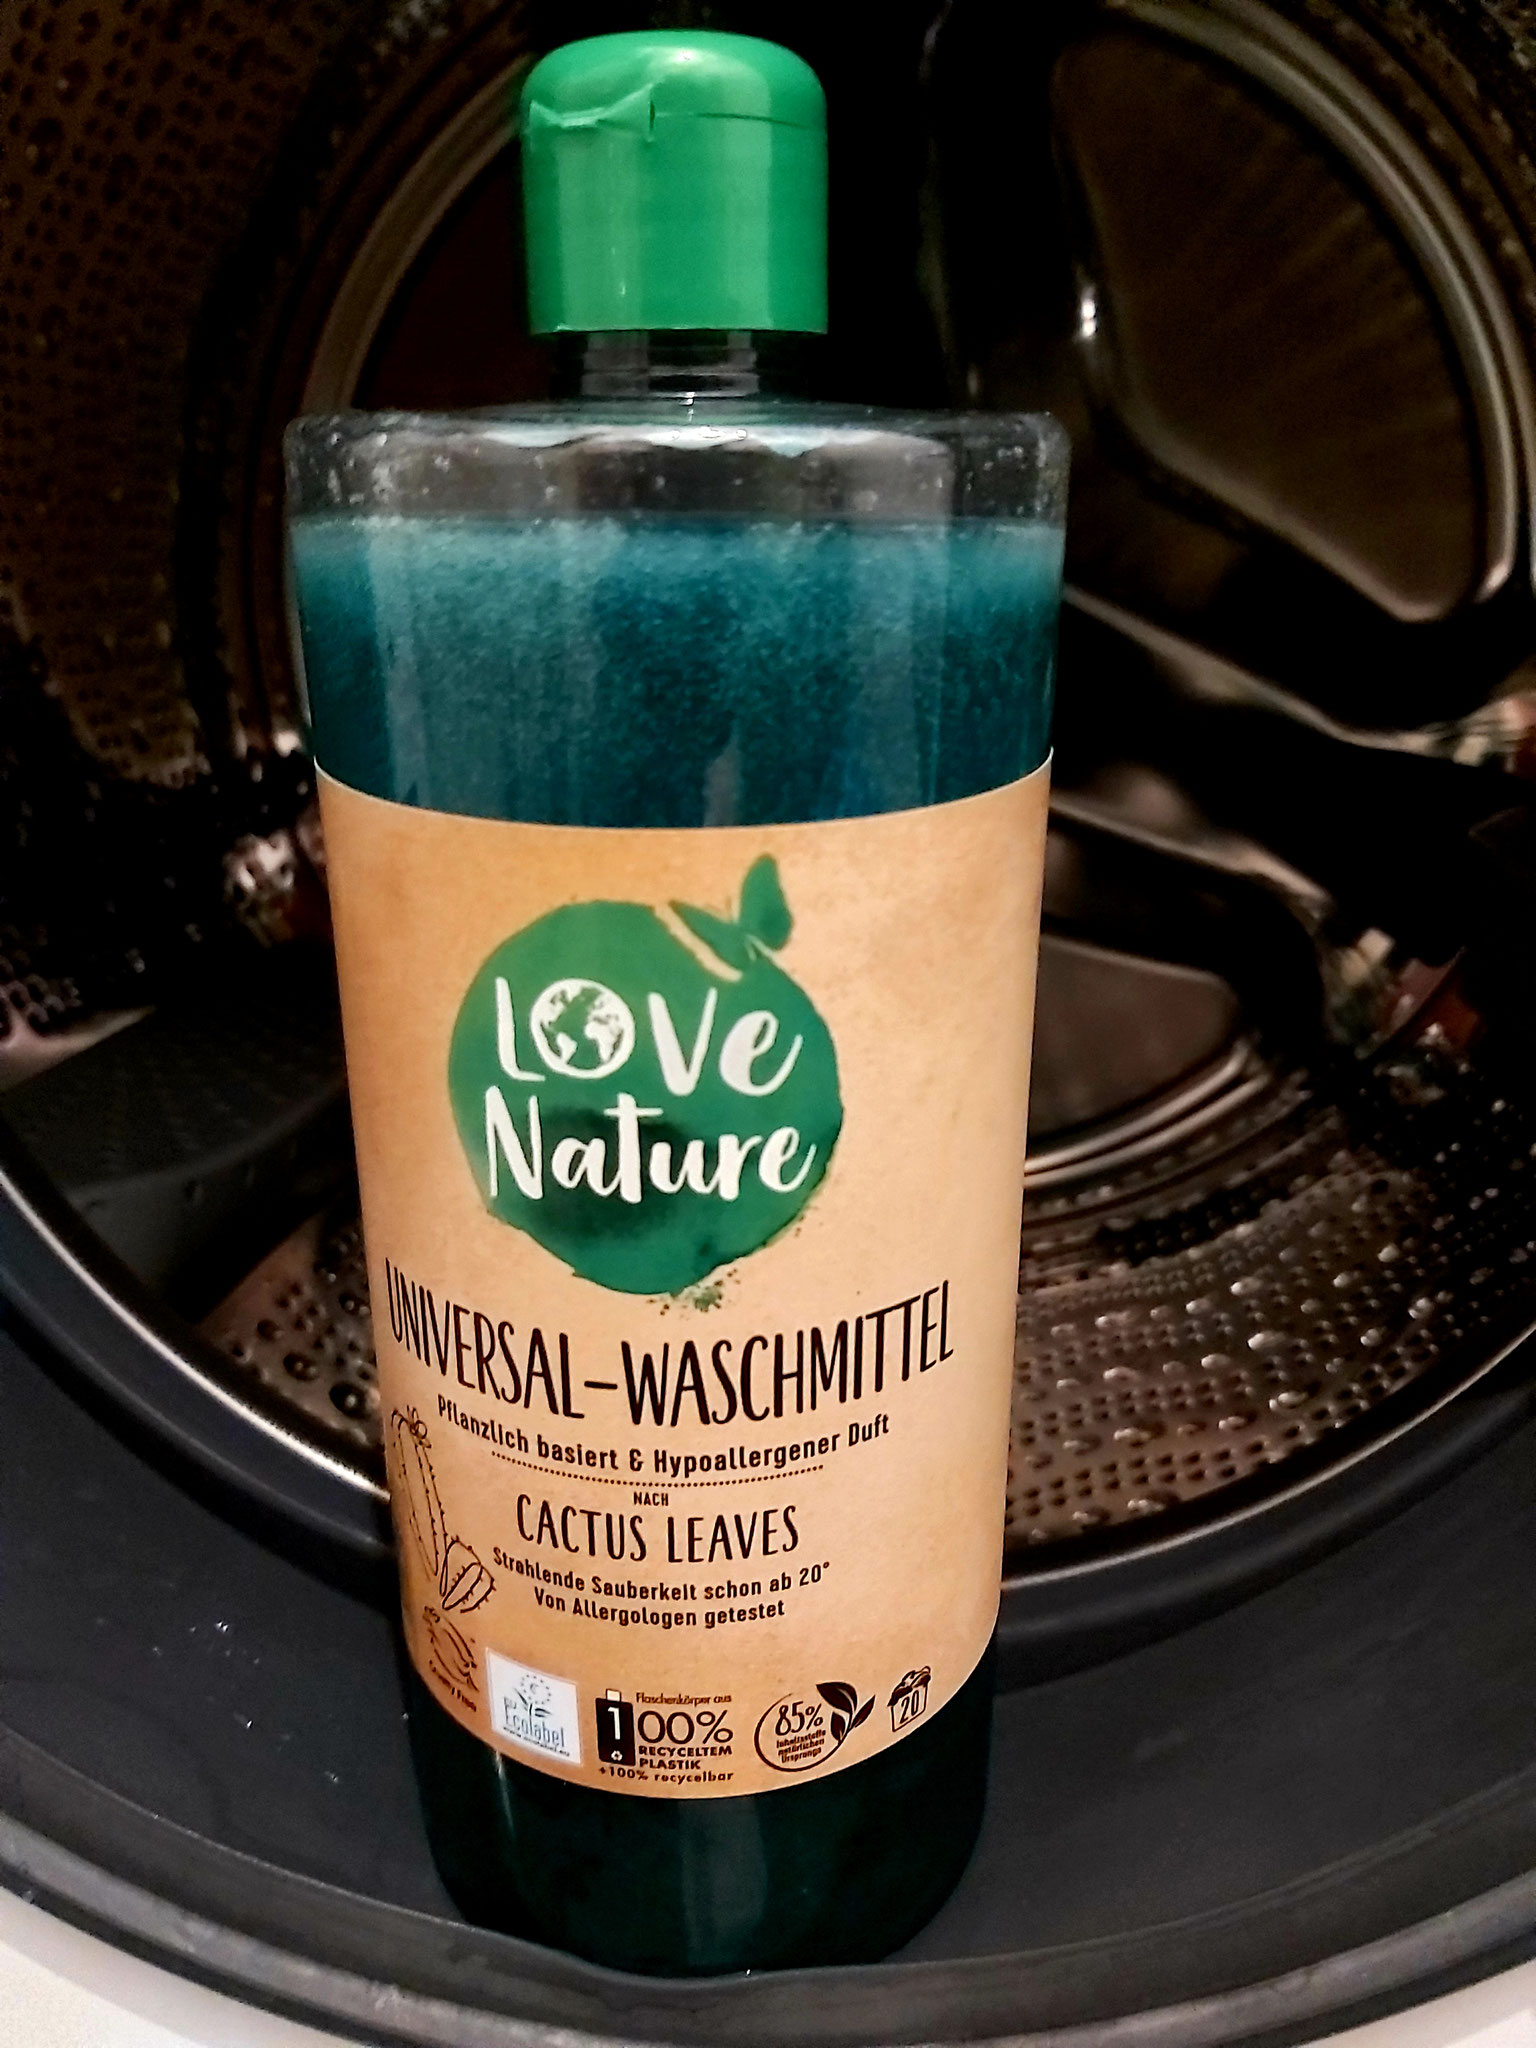 Das neue LOVE NATURE Universal-Waschmittel